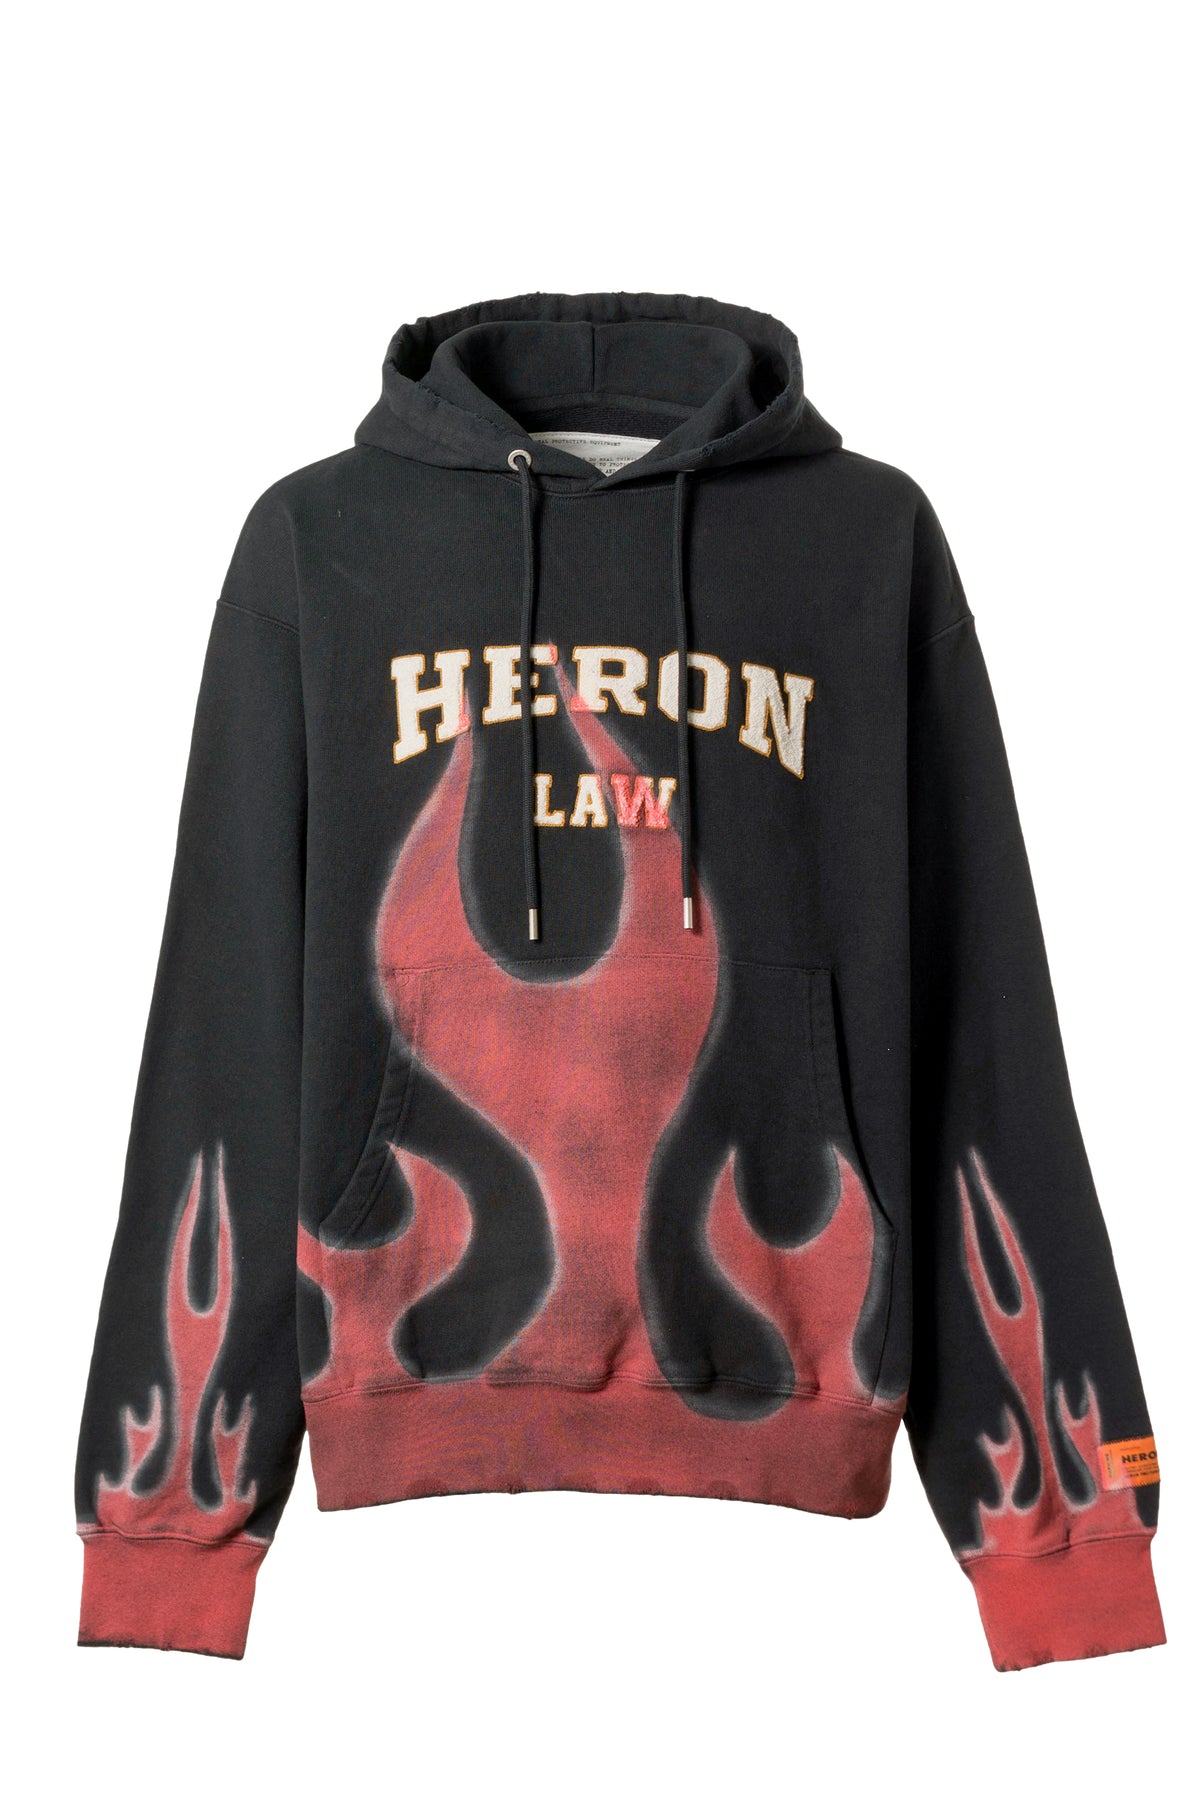 HERON LAW FLAMES HOODIE / BLK RED